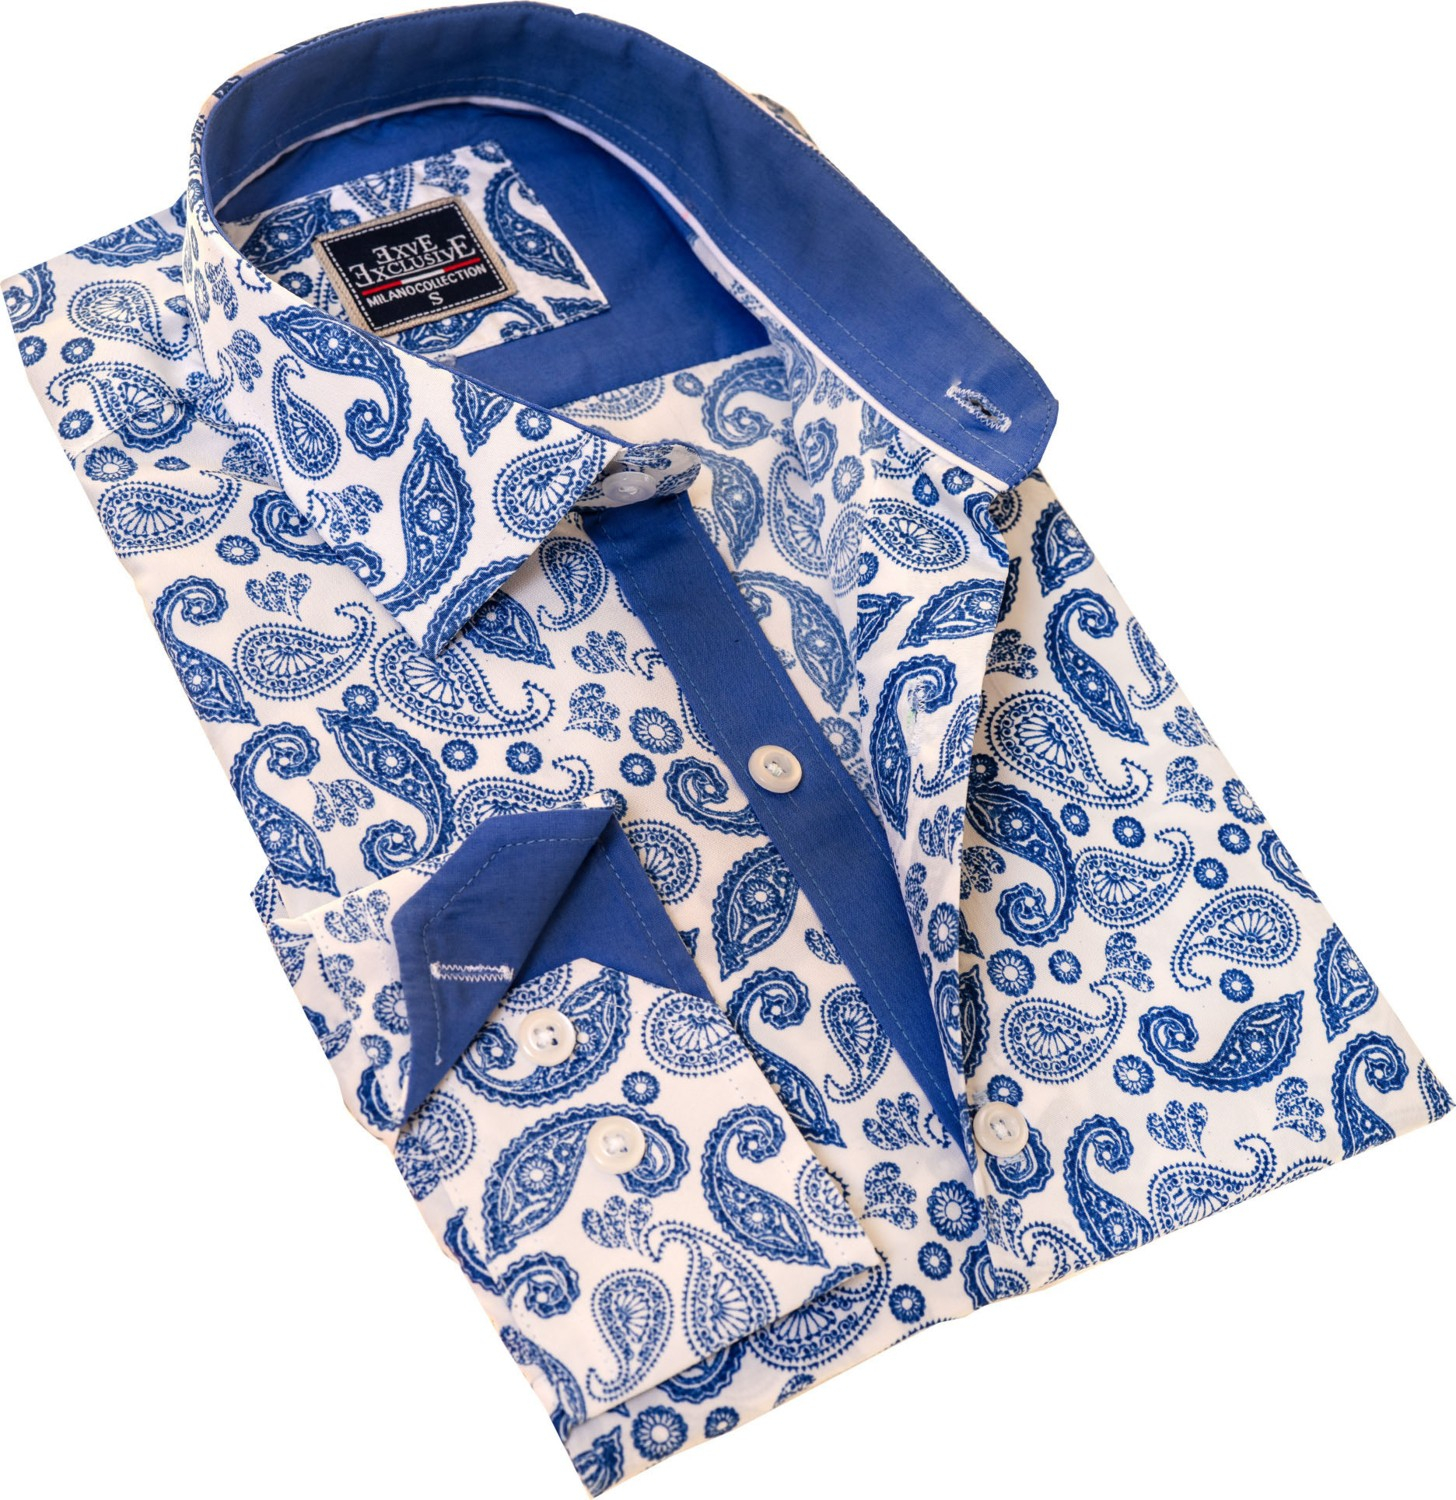 Эксклюзивная синяя рубашка для мужчин с узором пейсли в узком крое и длинным рукавом.